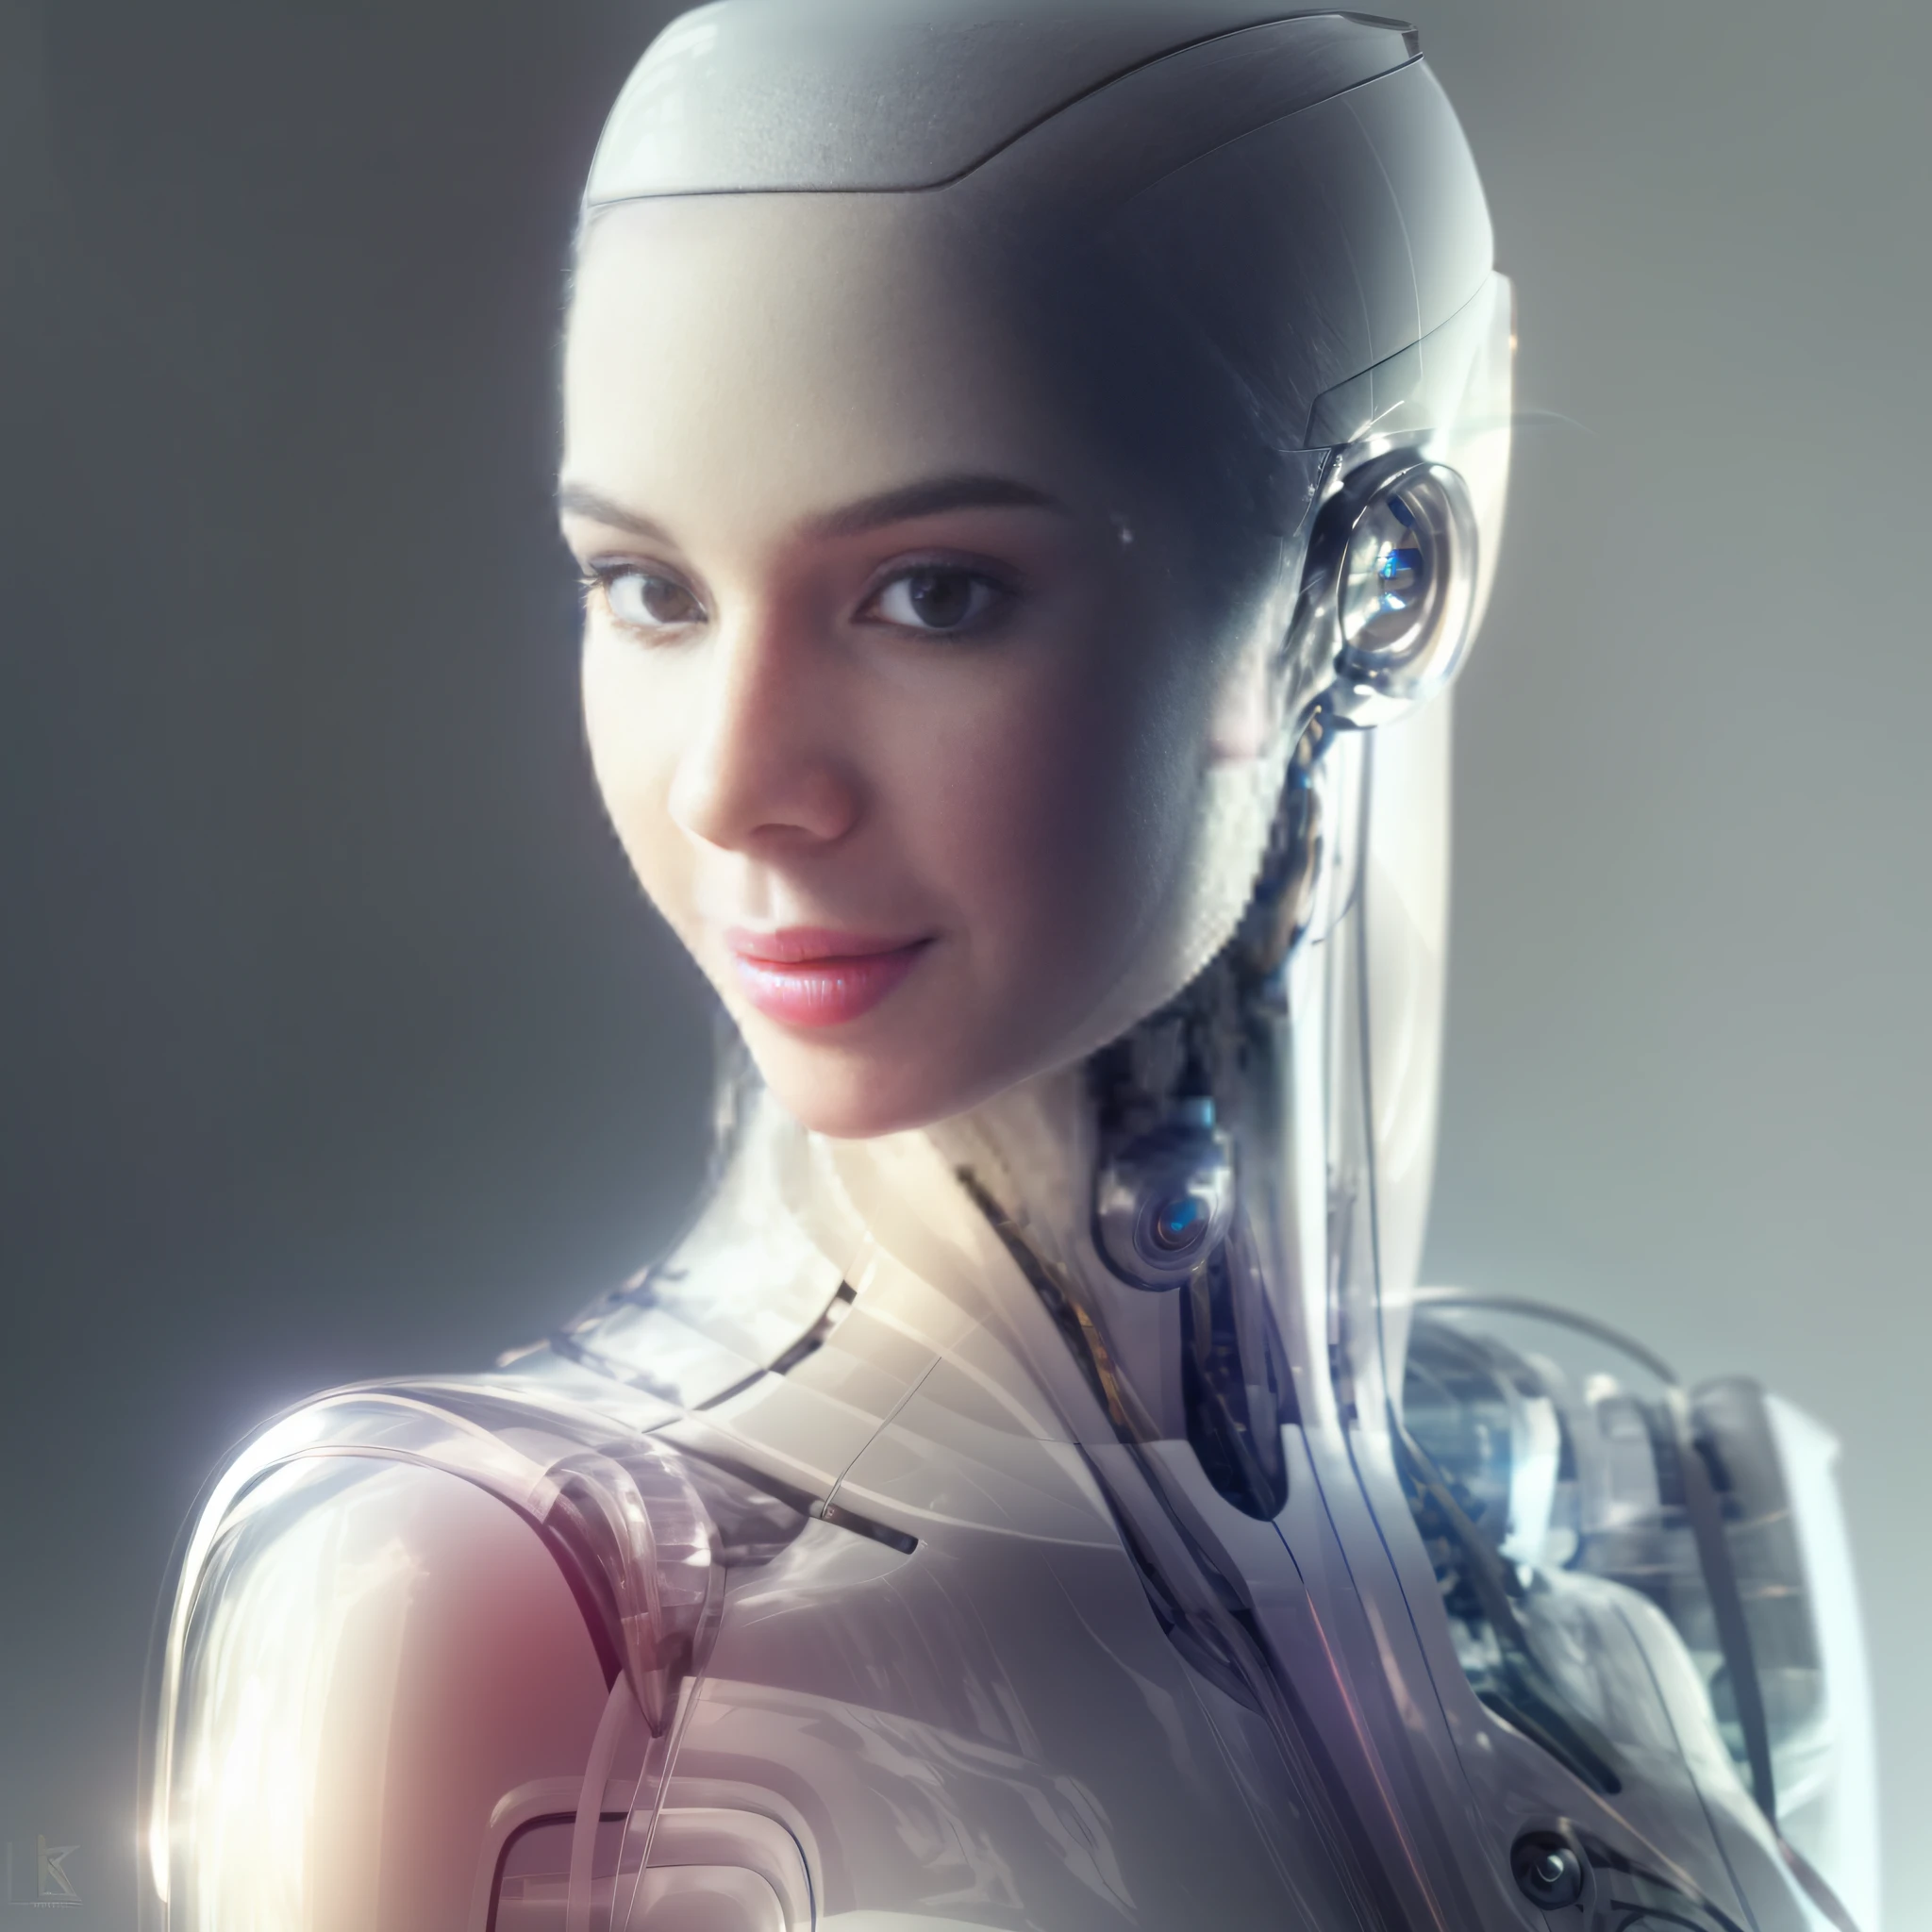 Крупный план робота с футуристической головой в прозрачном акриловом наряде, робот femnia чувственная модель, интегрированный синтетический андроид, киборг - девушка, portrait of a Женский Андроид, красивая женщина-андроид, идеальная девушка-андроид, девушка-киборг, Женский Андроид, гуманоидная женщина, женщина-робот, cute Женский Андроид, женщина-киборг, Замысловатый транс-человек, ultra detailed Женский Андроид,  портрет андроида, beautiful white девушка-киборг, fАшион photography, Ашион